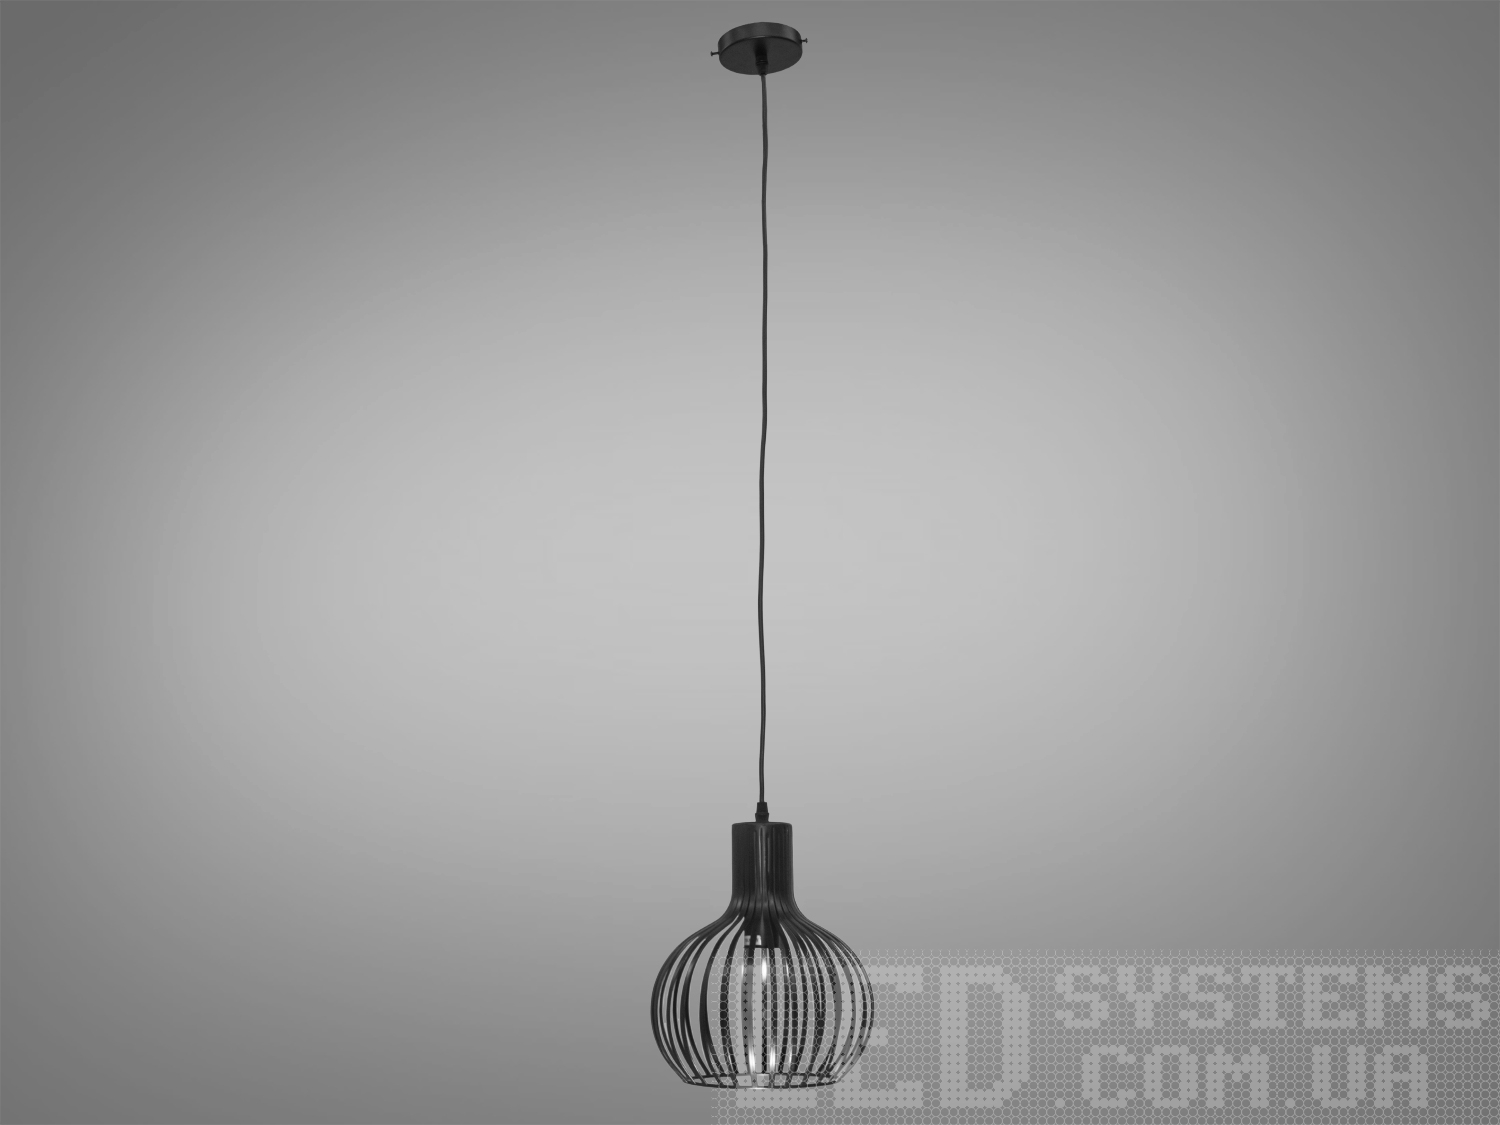 Світильник підвіс в стилі Loft, привносить в простір поєднання промислового та сучасного дизайну. Її унікальність виражена в металевому плафоні, виготовленому зі сплетеного дроту, і теплому світлі лампочки Edison.
Основні Характеристики:
Металевий Плафон із Плетеного Дроту:
Металевий плафон виглядає, ніби він вручну плетений з дроту, створюючи цікавий інтер'єрний акцент та віддзеркалюючи простоту лофт-стилю.
Лампочка Edison:
В центрі плафону розташована лампочка Edison, яка надає освітленню теплоту та неповторний вигляд, підкреслюючи індустріальний характер.
Простий і Ефективний Дизайн:
Люстра має простий, але ефективний дизайн, який дозволяє впроваджувати її в різні стилі інтер'єру.
Металевий Відтінок:
Металевий відтінок плафону може бути вибраний відповідно до загального кольорового рішення приміщення.
Сфера застосування:
Кухня чи Їдальня:
Ідеально підійде для настільного освітлення над кухонним столом чи барною стійкою, додаючи атмосферу теплоти та стилю.
Лофтові Простори:
Лофтові приміщення чи студії, де цінується сучасний індустріальний дизайн.
Кафе або Бари:
У комерційних приміщеннях, таких як кафе або бари, де стиль лофт завжди в тренді.
Творчі Робочі Простори:
В офісах чи творчих просторах (арт-простори, коворкінги, квеструми, фото-студії  та інш., де важливий естетичний дизайн і функціональність.
Цей металевий світильник в стилі Loft створює не лише практичне світло, але і виражає тепло та стиль, вносячи унікальний шарм в будь-яке приміщення.
Лампочка в комплект не входить.